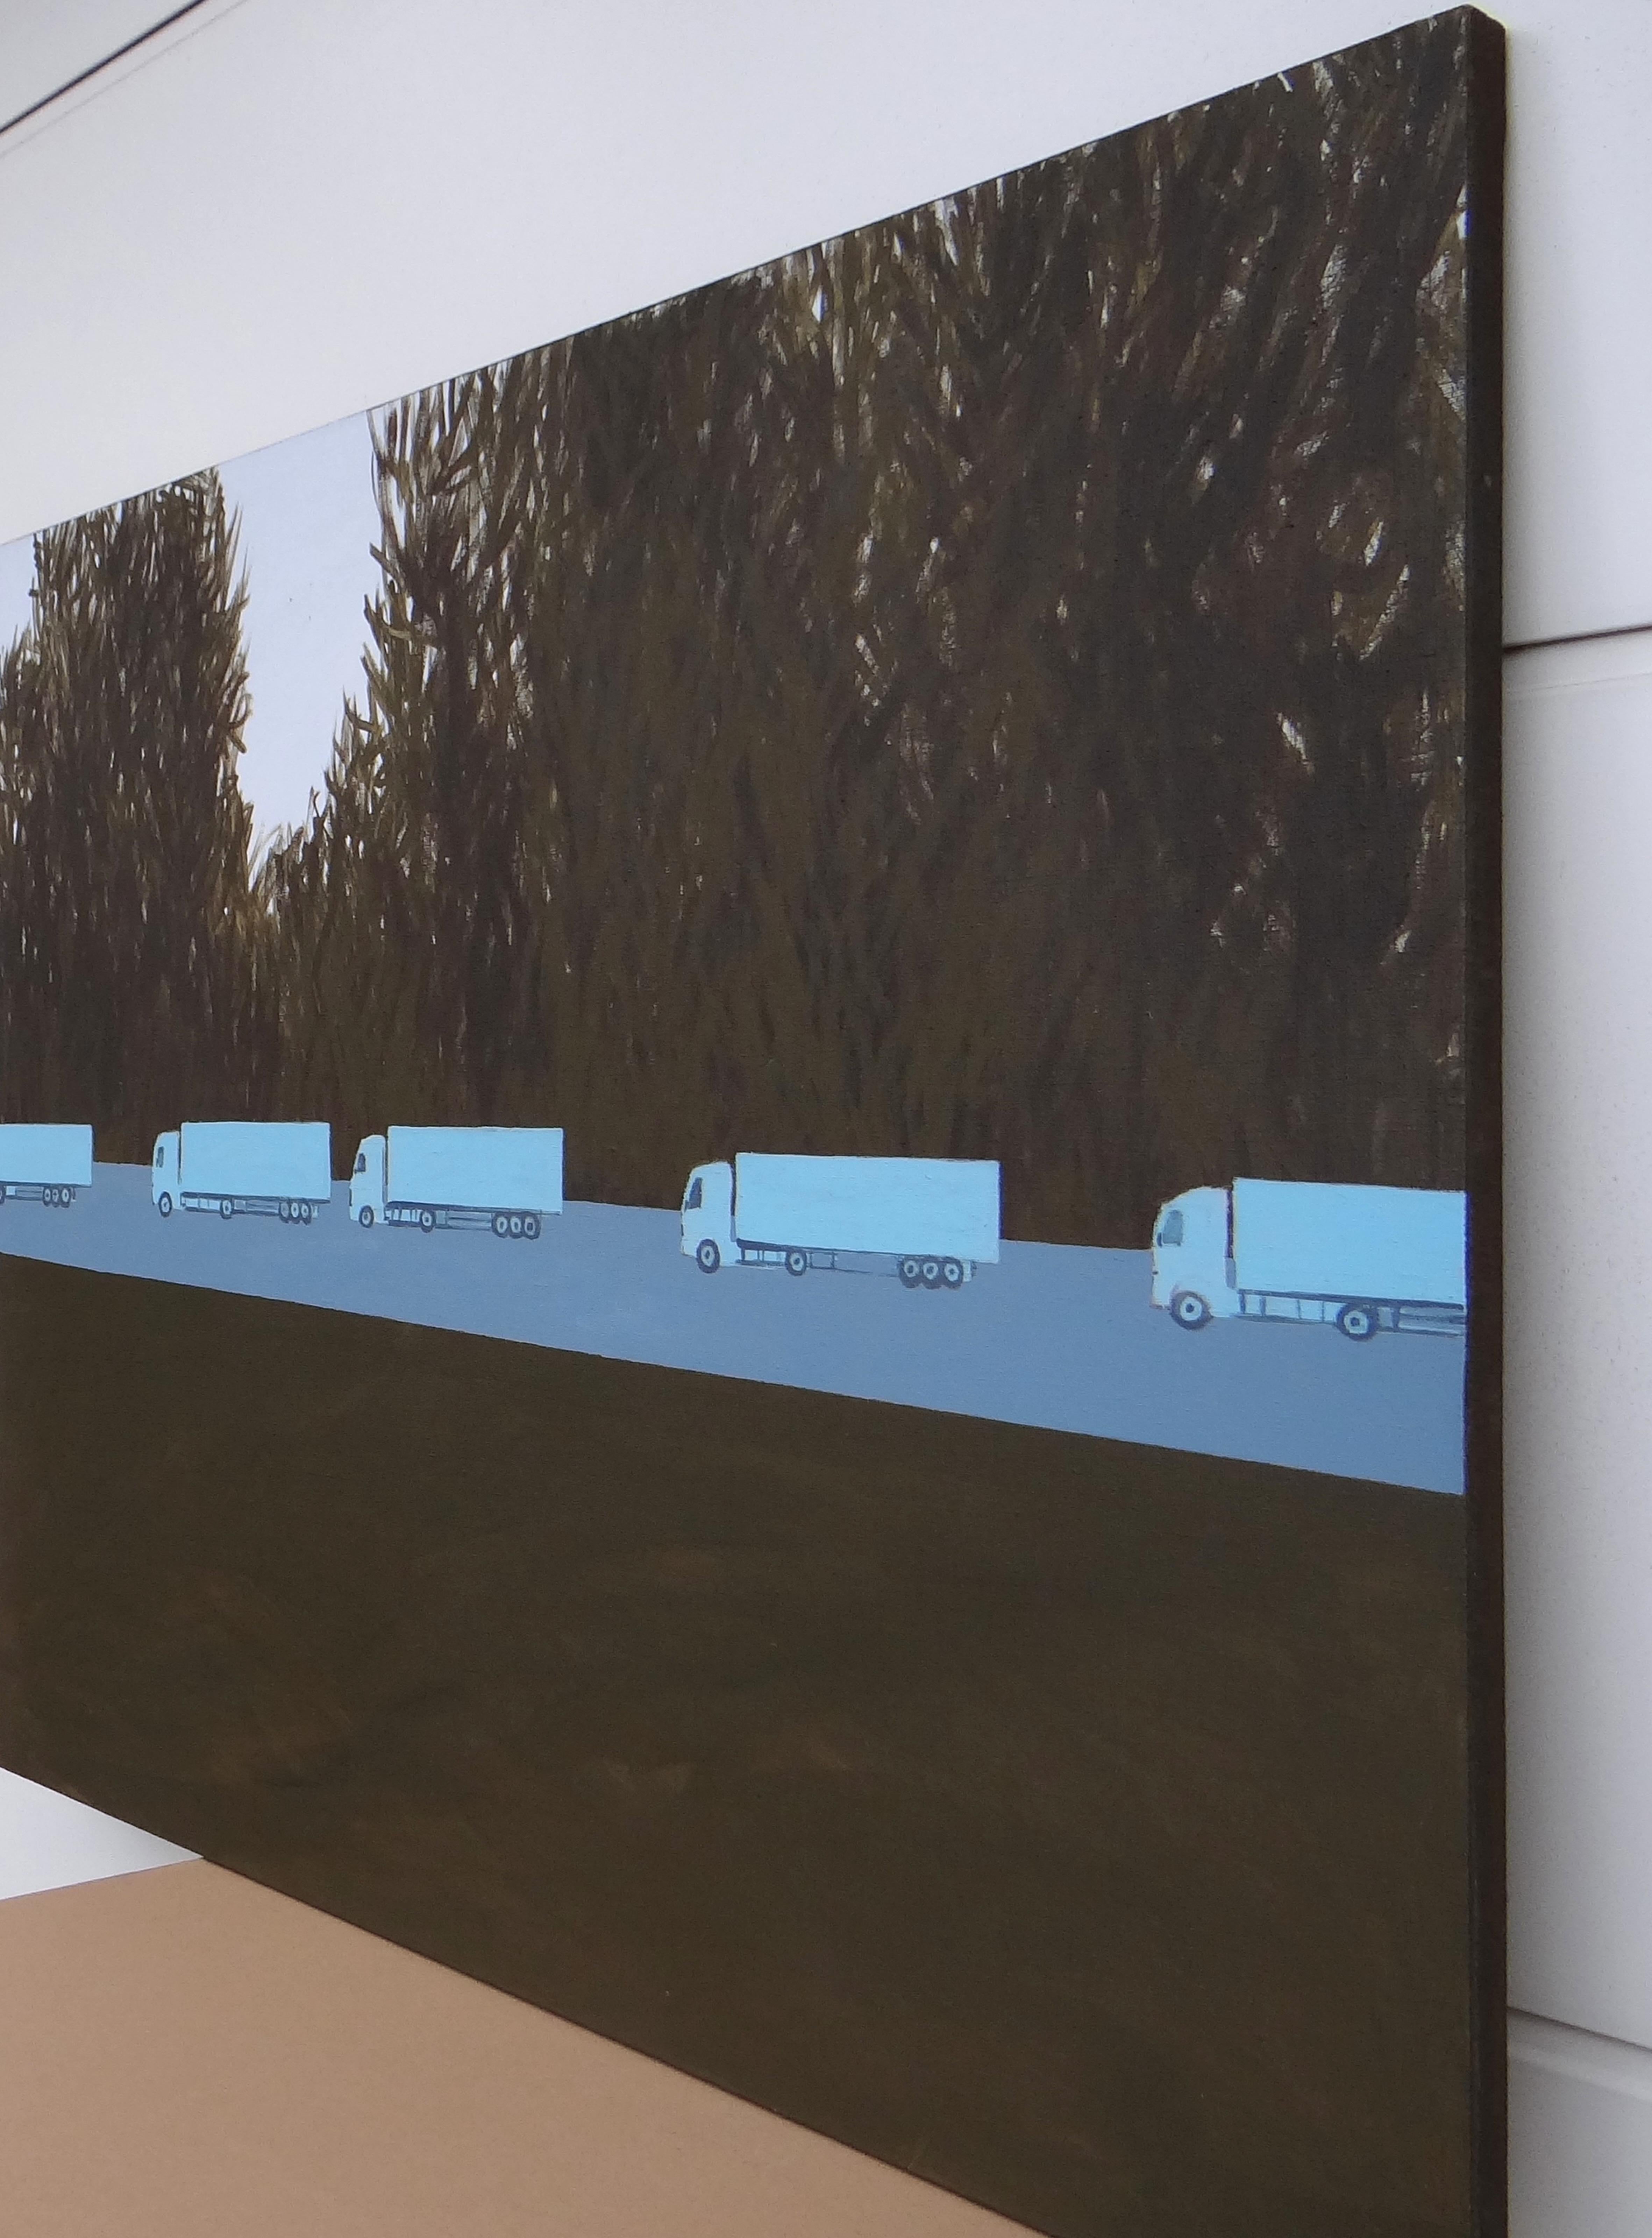 Colonne de camions 2 - Peinture expressive contemporaine de paysage, avenue des arbres - Contemporain Painting par Joanna Mrozowska